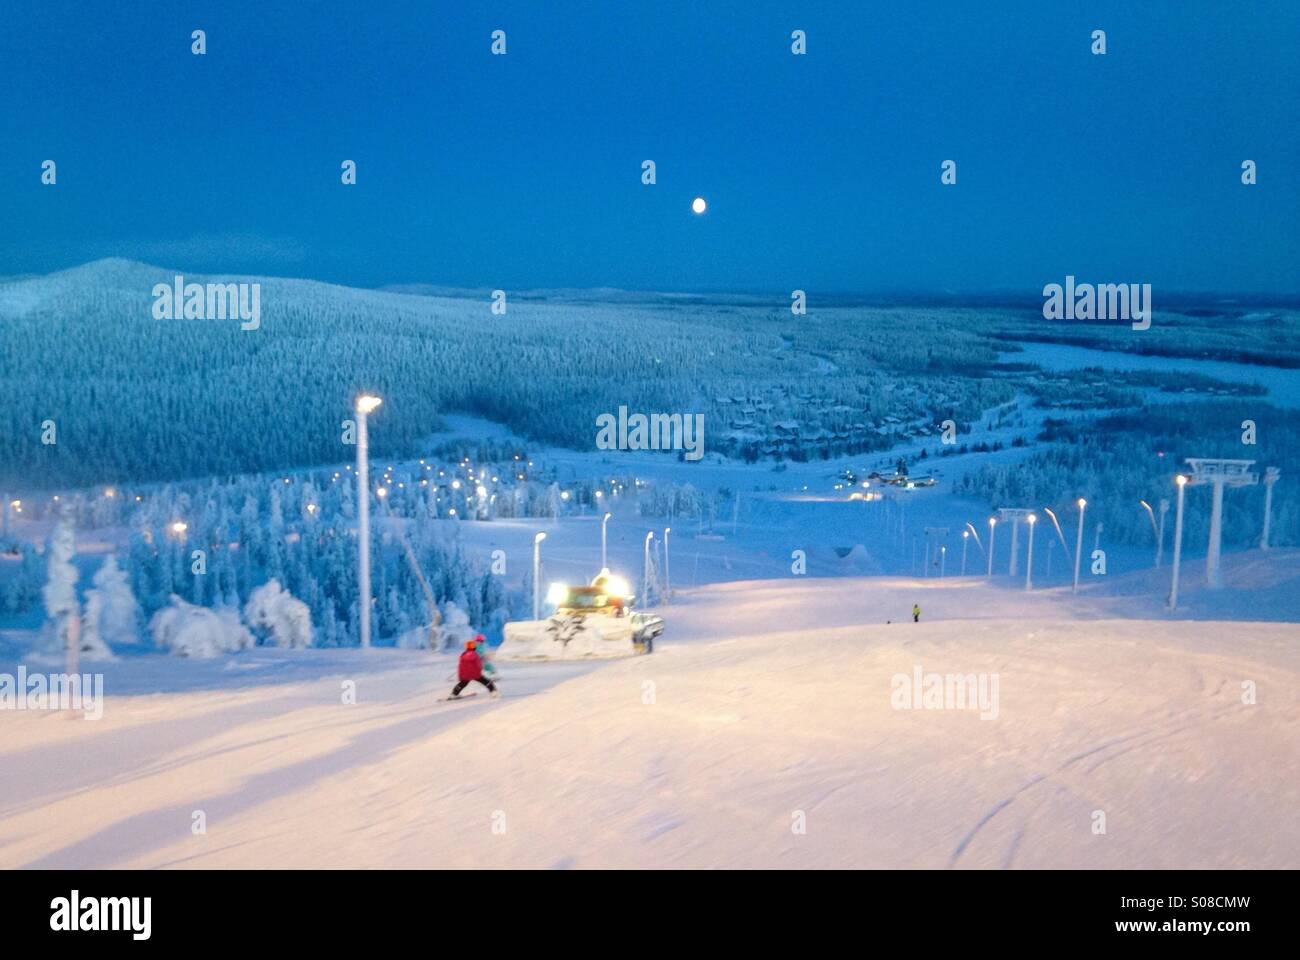 Ski slopes at Ruka, Finland Stock Photo